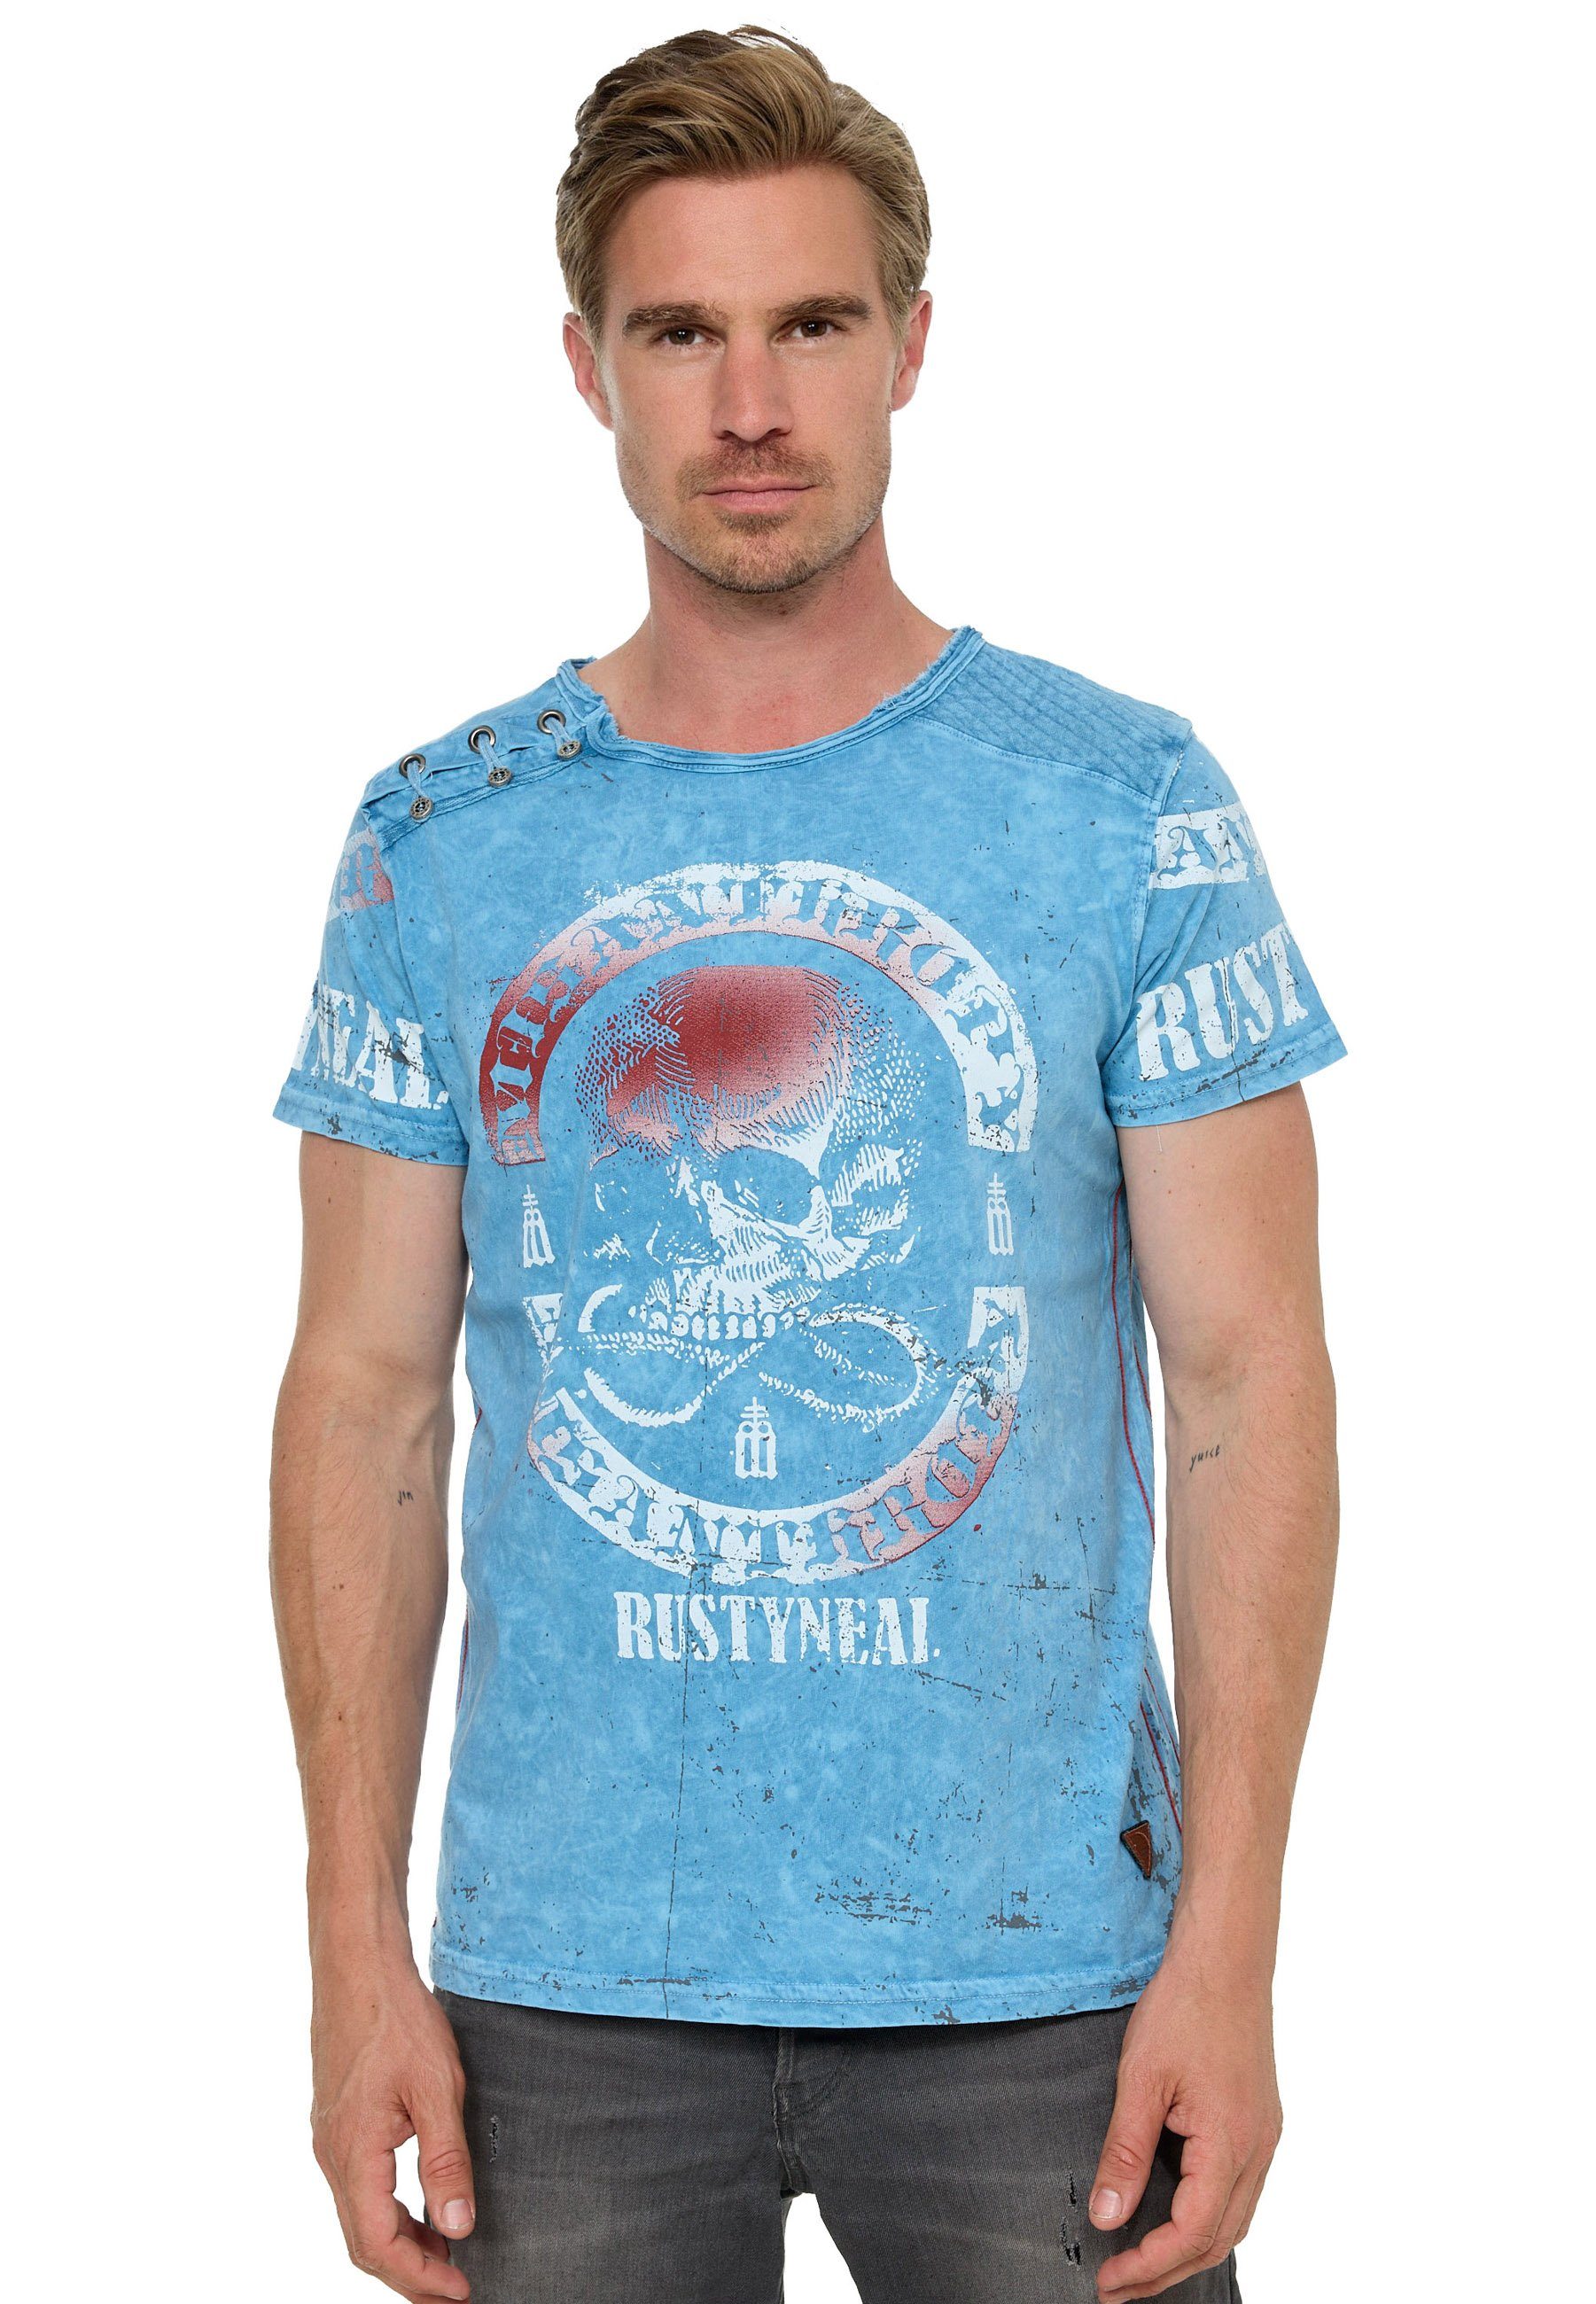 Rusty Neal T-Shirt mit Markenprint, Aus reiner hochwertiger Baumwolle  gefertigt